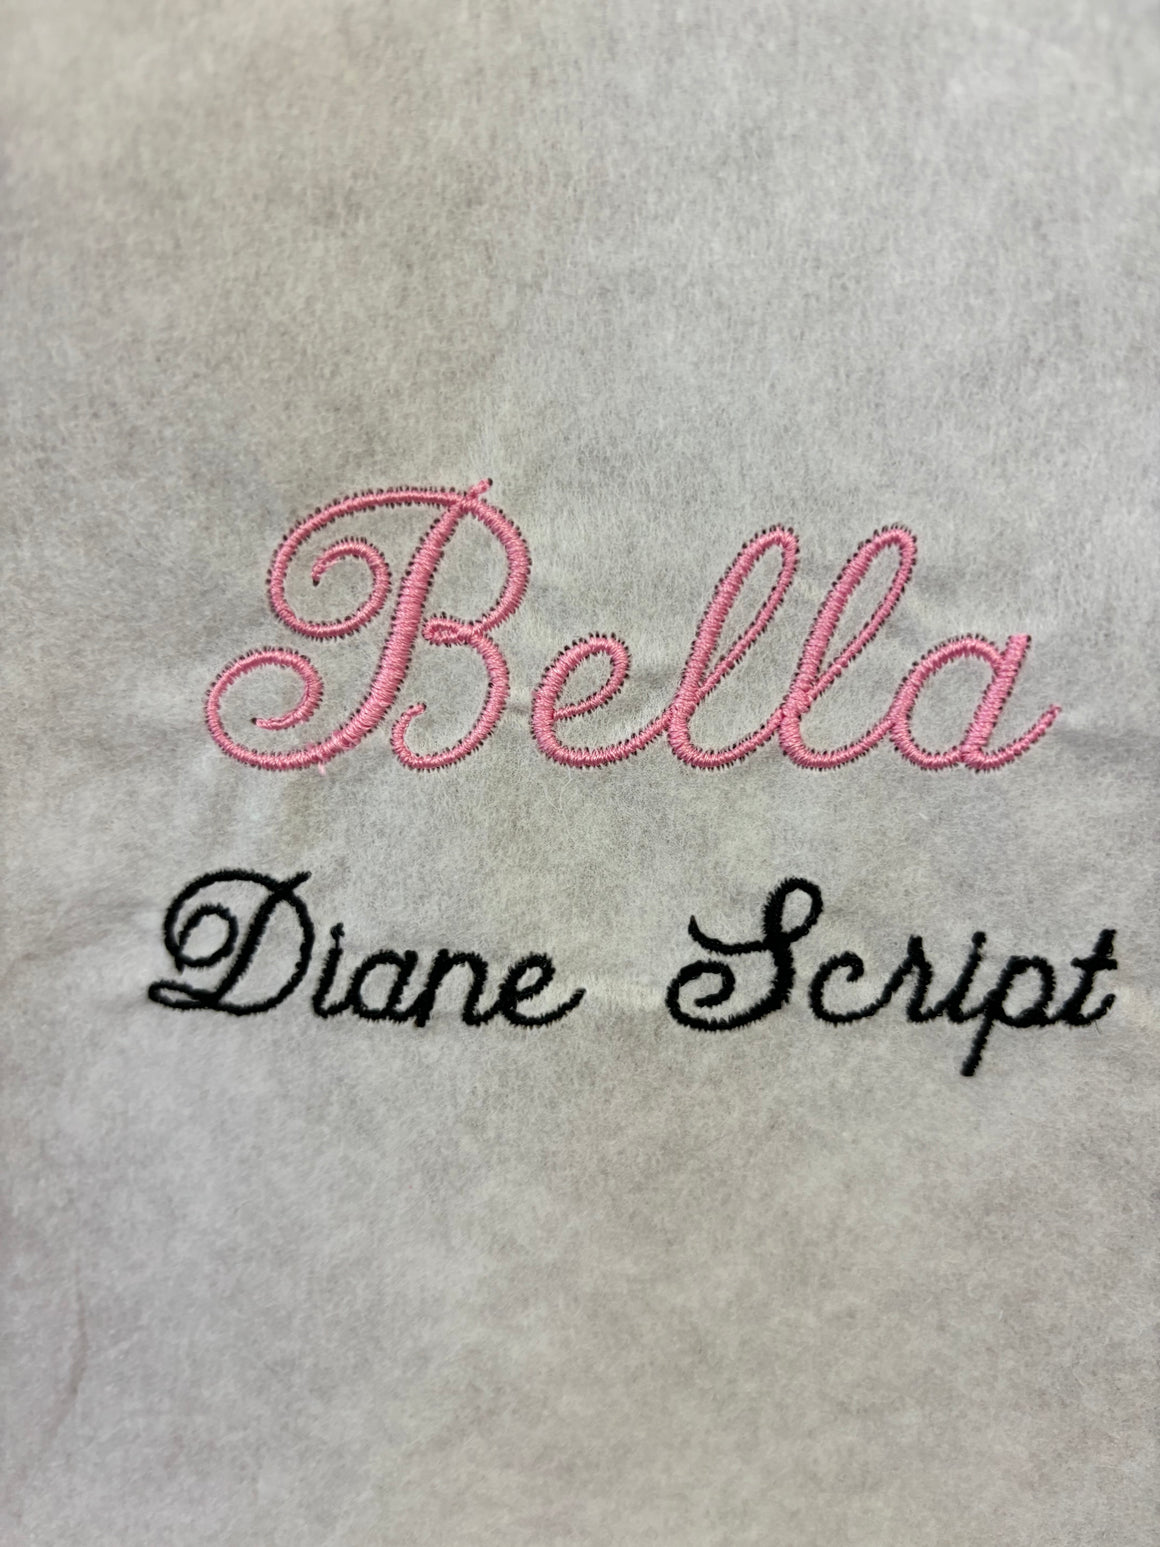 Monogram - Diane Script